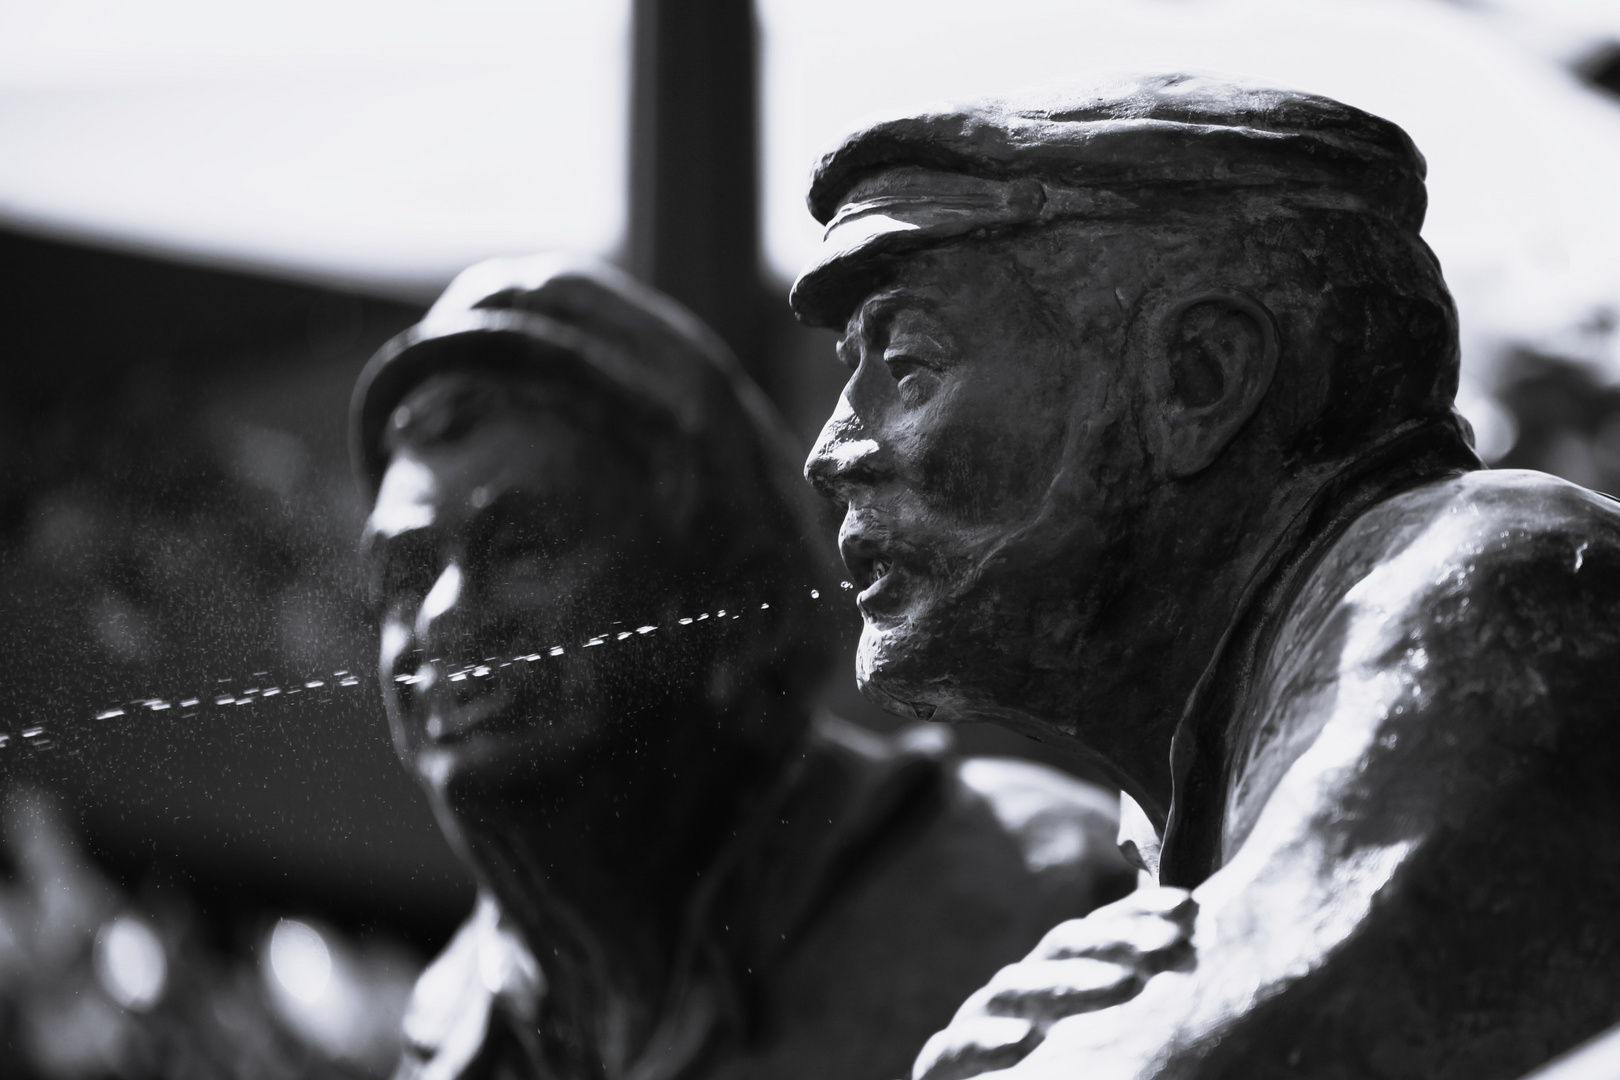 Bronzefigur "spuckende Männer" im Emdener Hafen